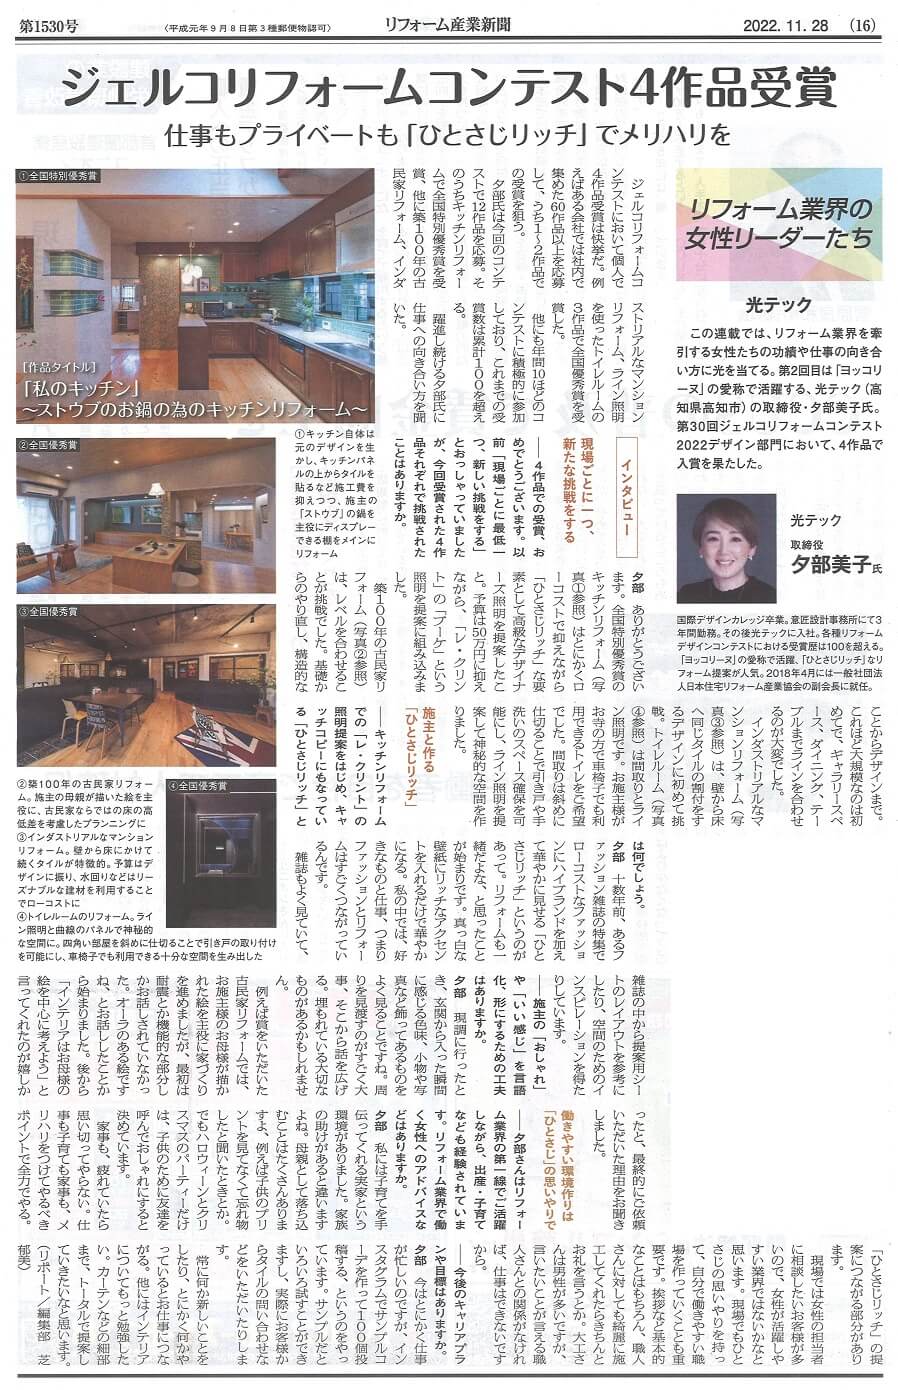 「リフォームコンテスト4作品受賞」光テック･夕部美子氏のインタビュー記事がリフォーム産業新聞に掲載されました